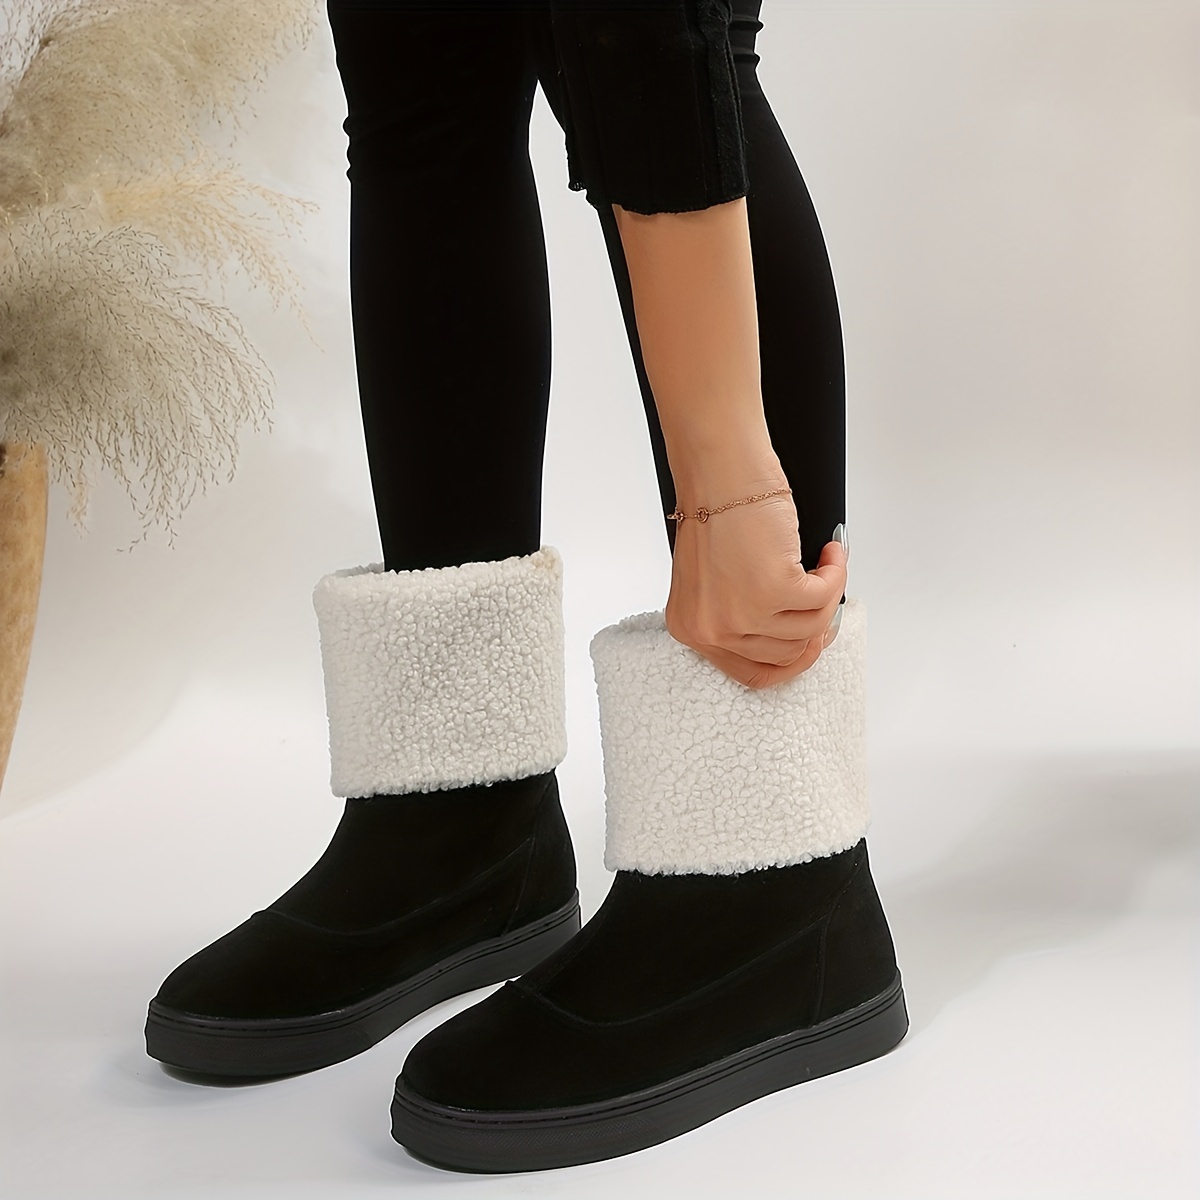 Botas de nieve unisex para hombre y mujer, botas de invierno para mujer,  impermeables, sin cordones, con forro de piel cálida, zapatos gruesos para